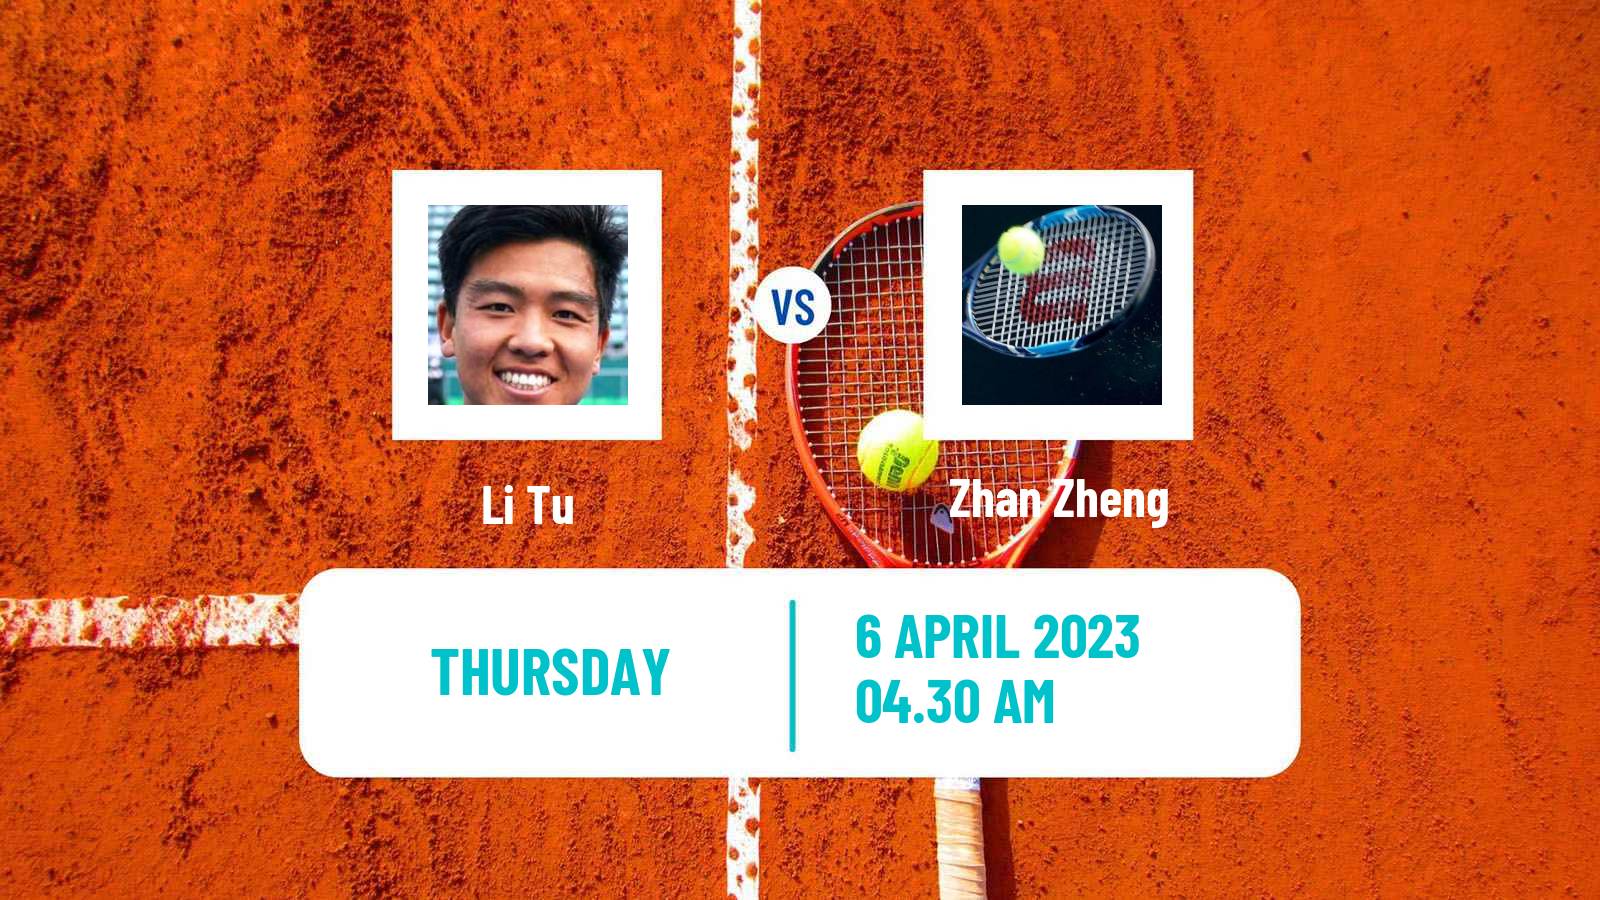 Tennis ITF Tournaments Li Tu - Zhan Zheng